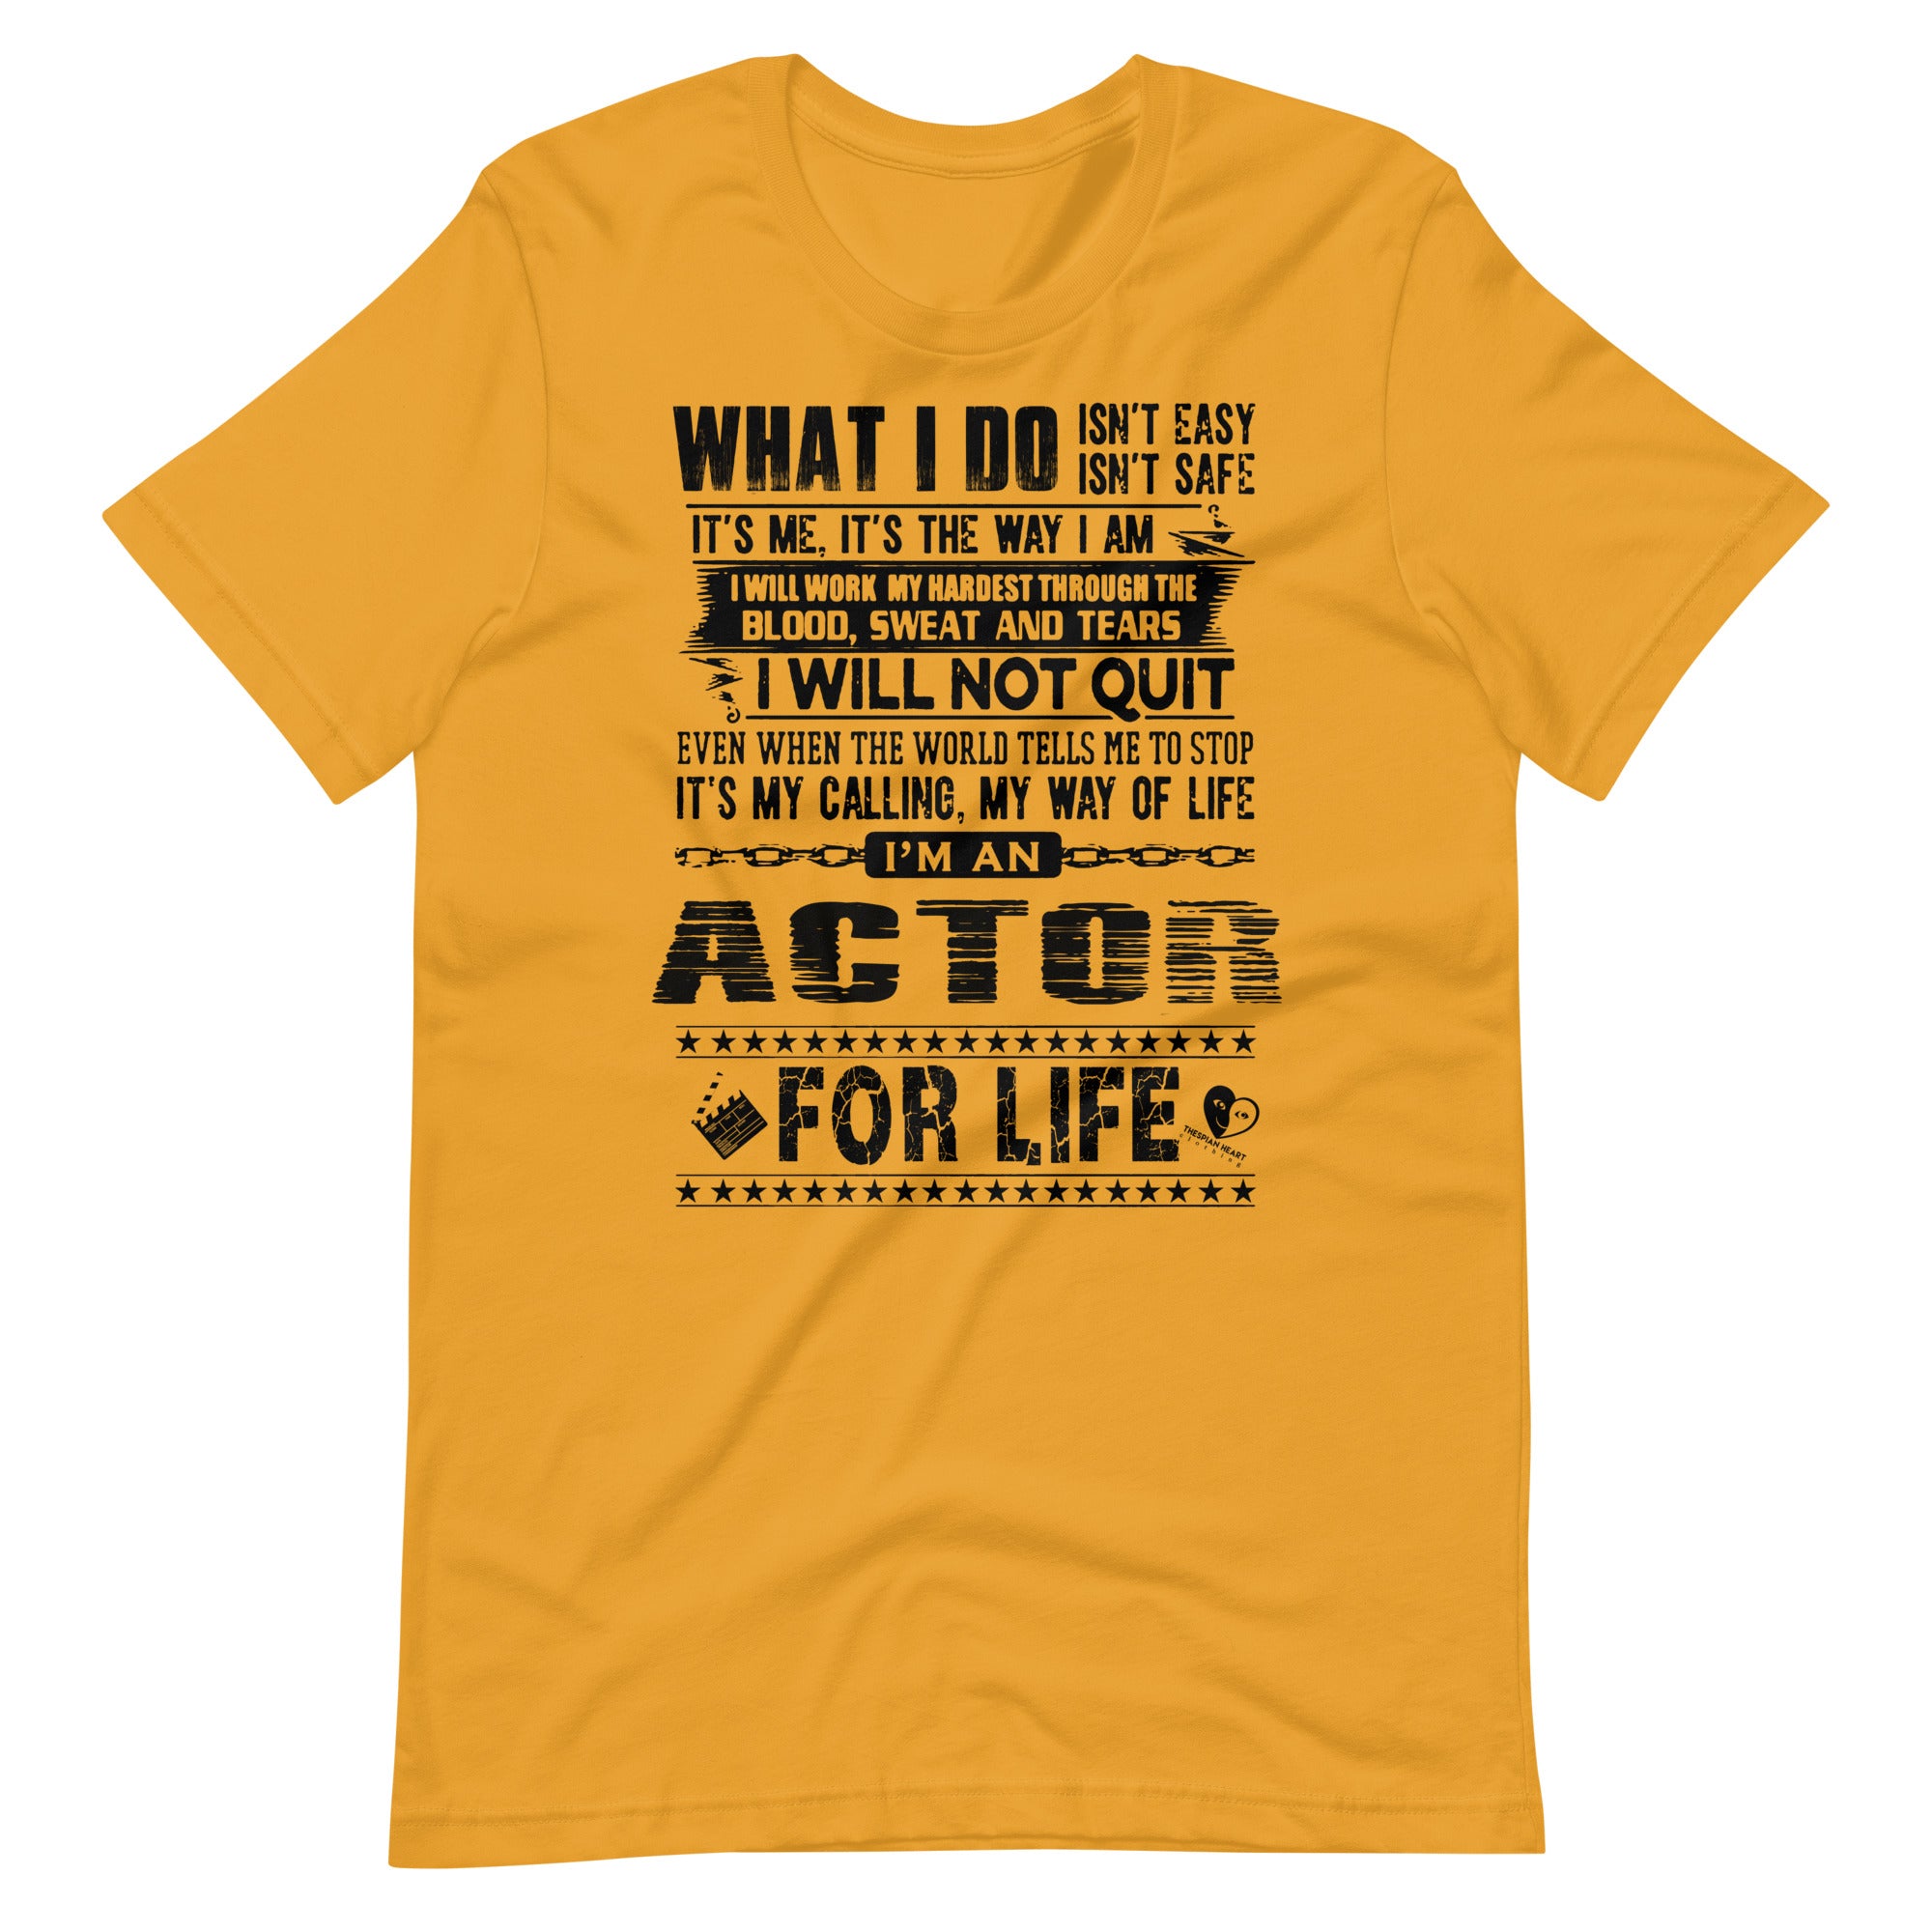 Actor For Life - Short-Sleeve Staple Unisex T-Shirt